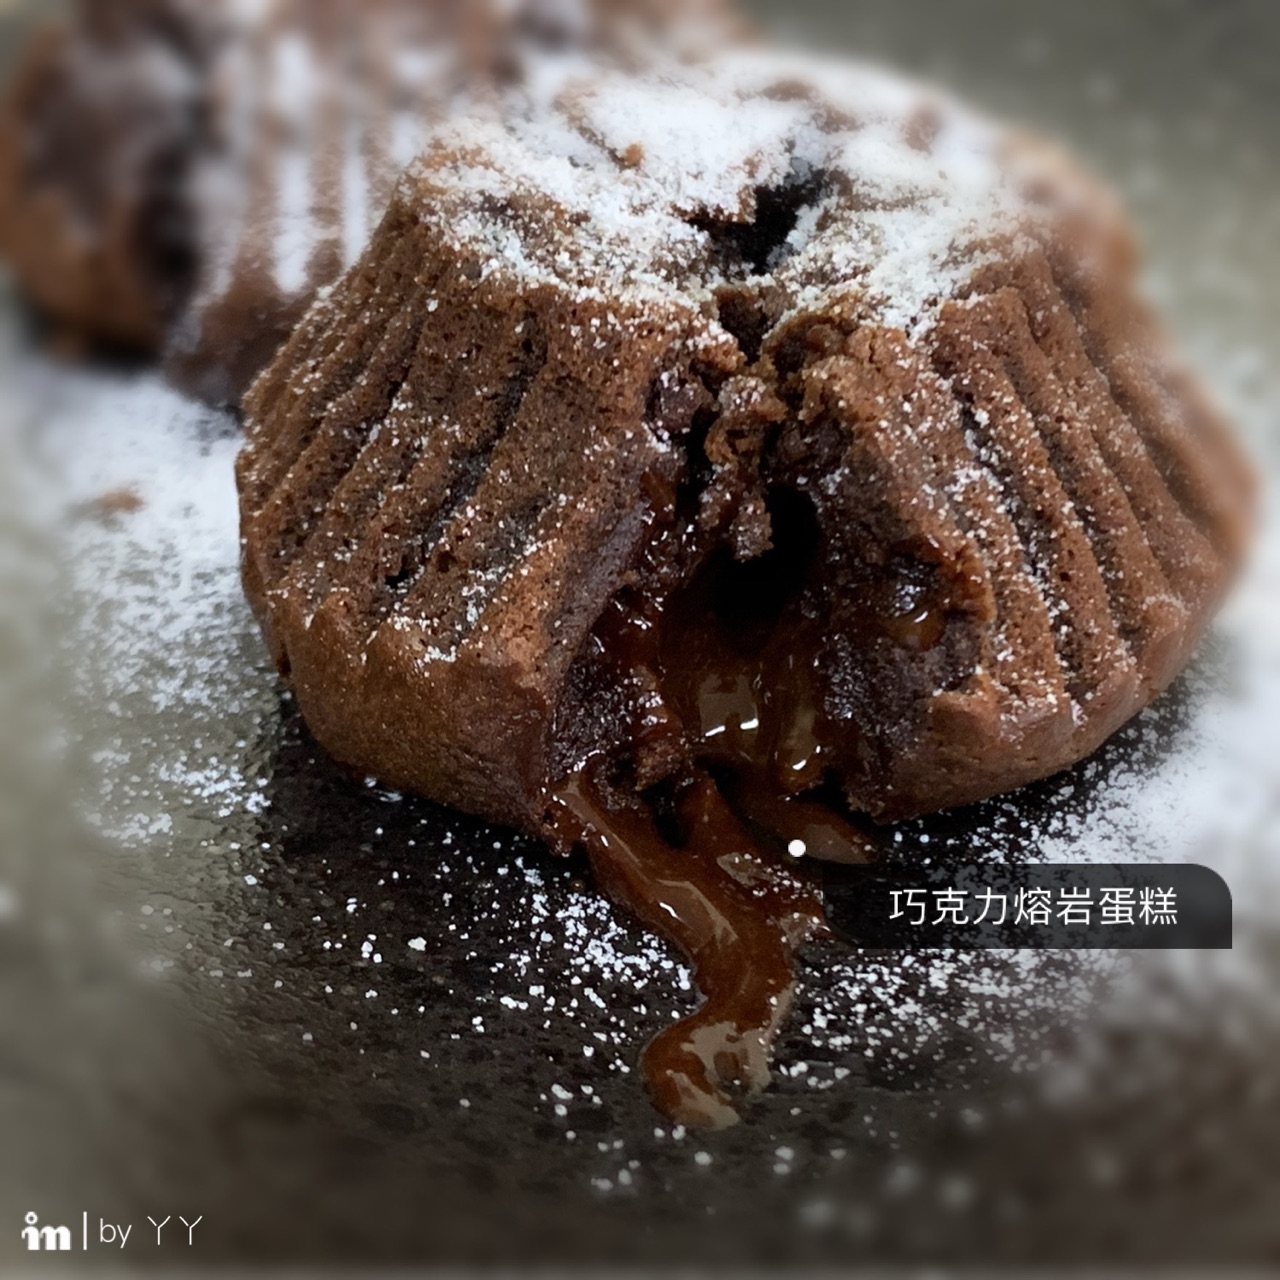 全家🍫巧克力熔岩蛋糕🍰🍰🍰 - 美食板 | Dcard